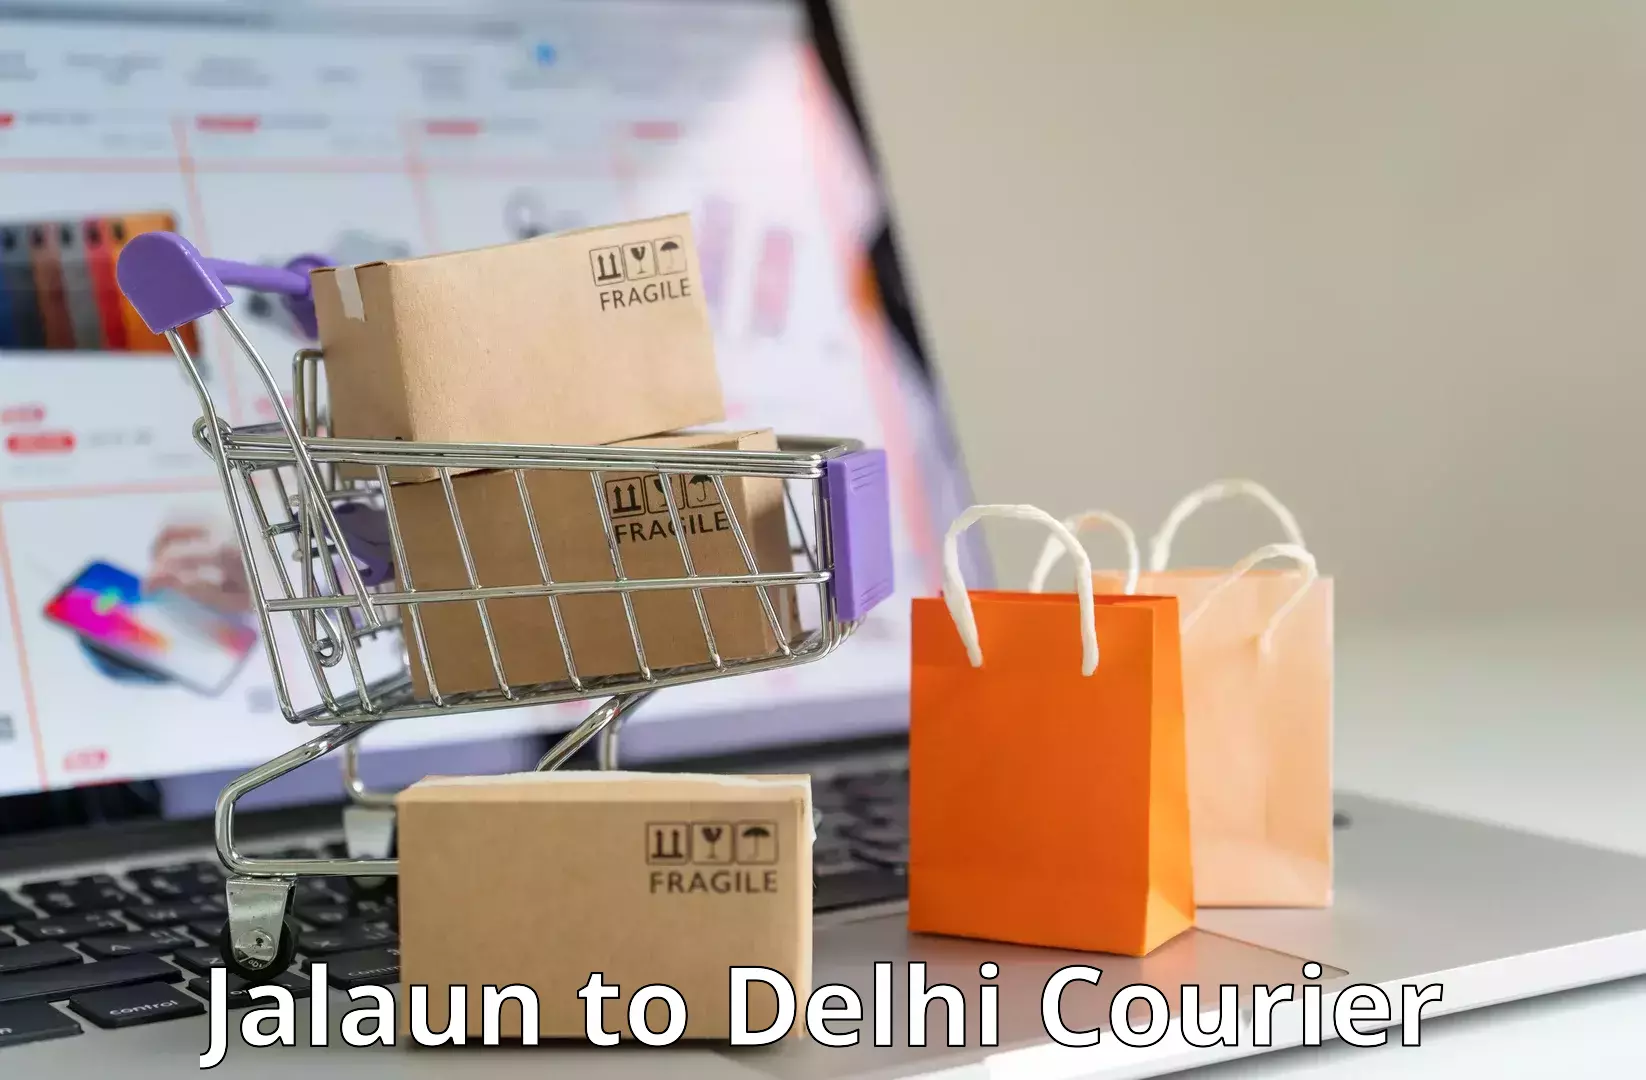 Next-generation courier services Jalaun to Delhi Technological University DTU